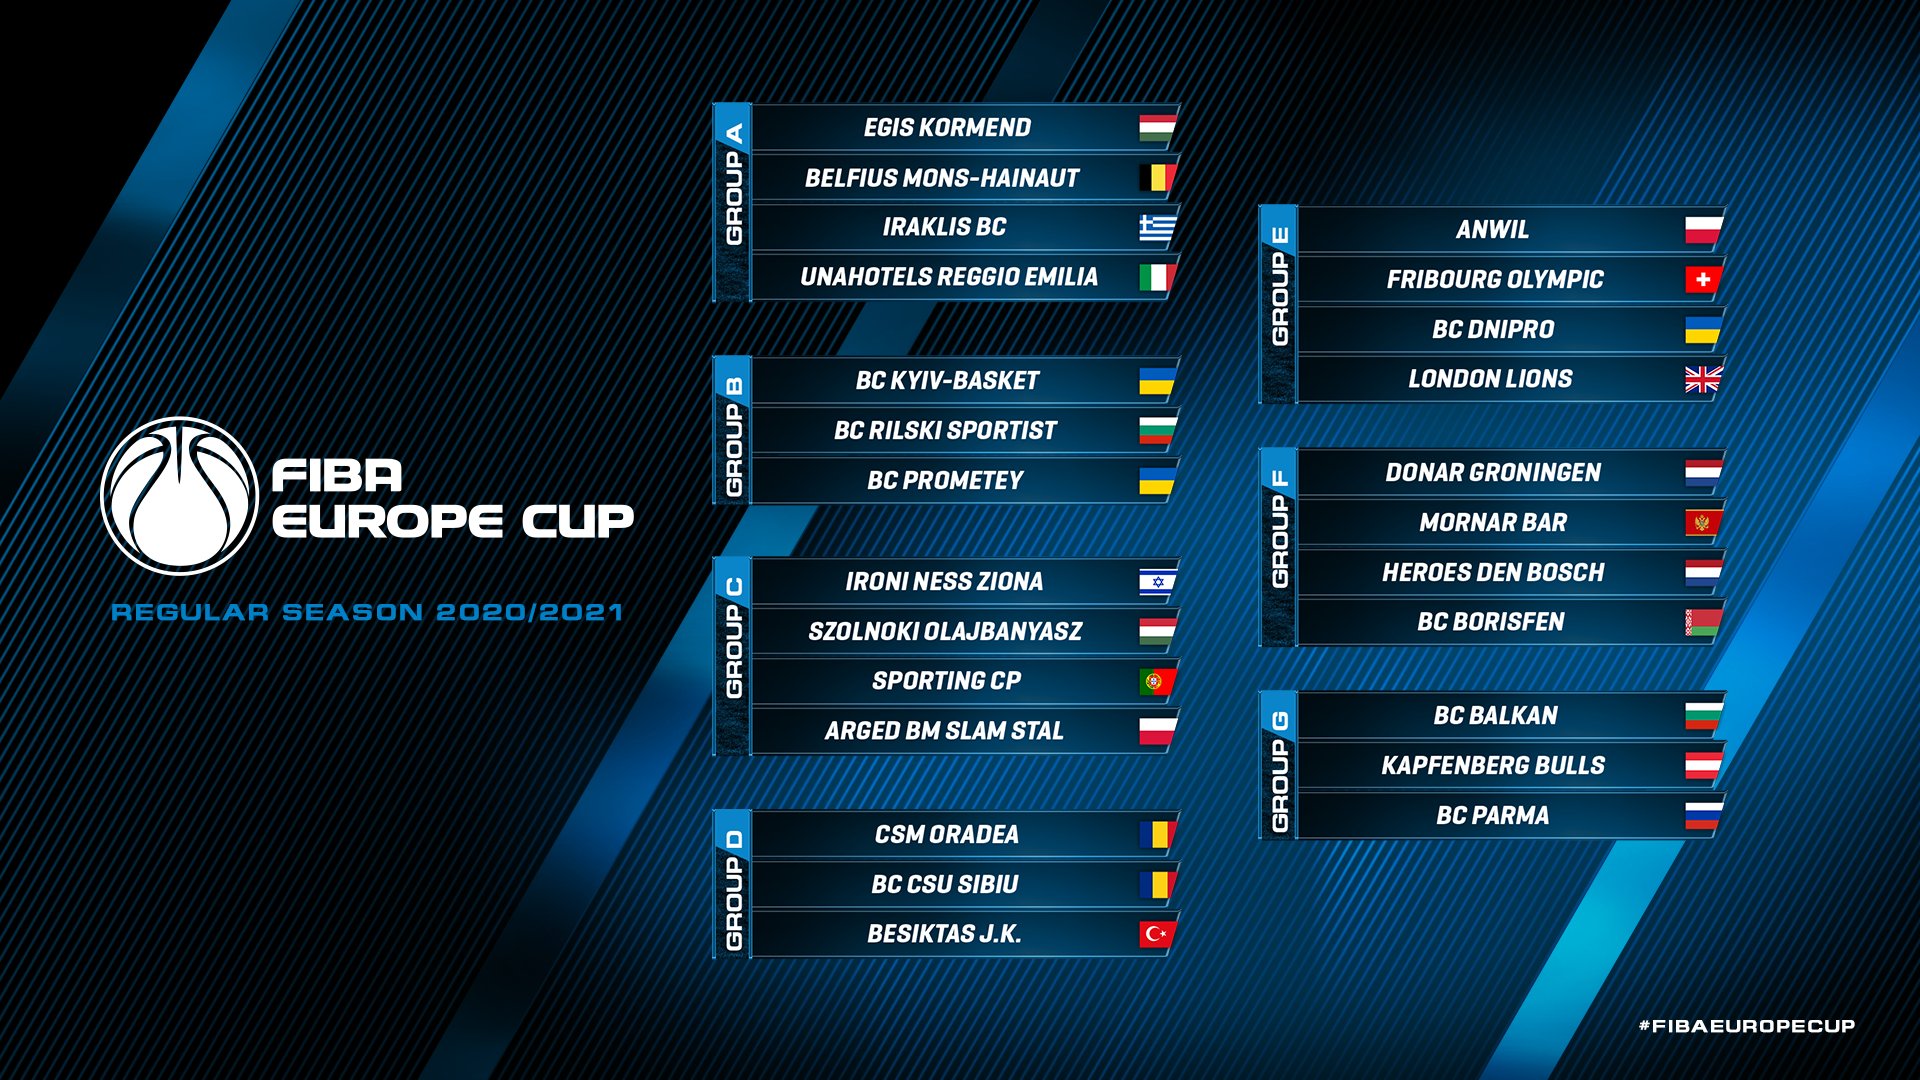 Kialakult a FIBA Europe Cup teljes mezőnye